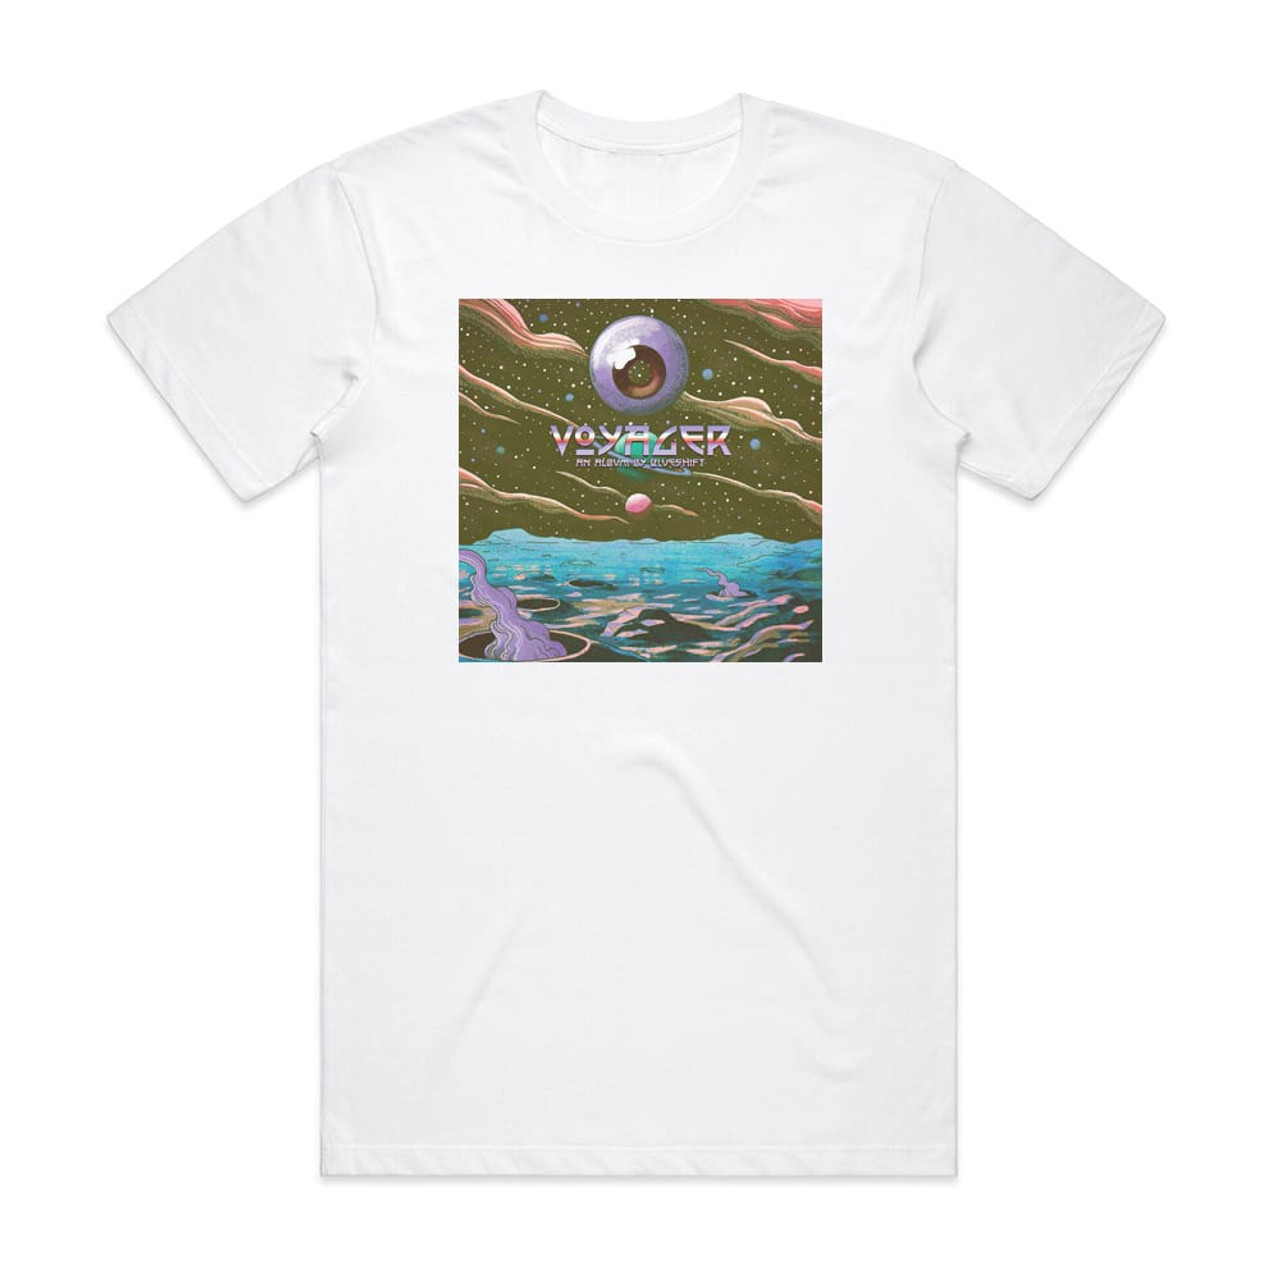 Blueshift Voyager Album Cover T-Shirt White